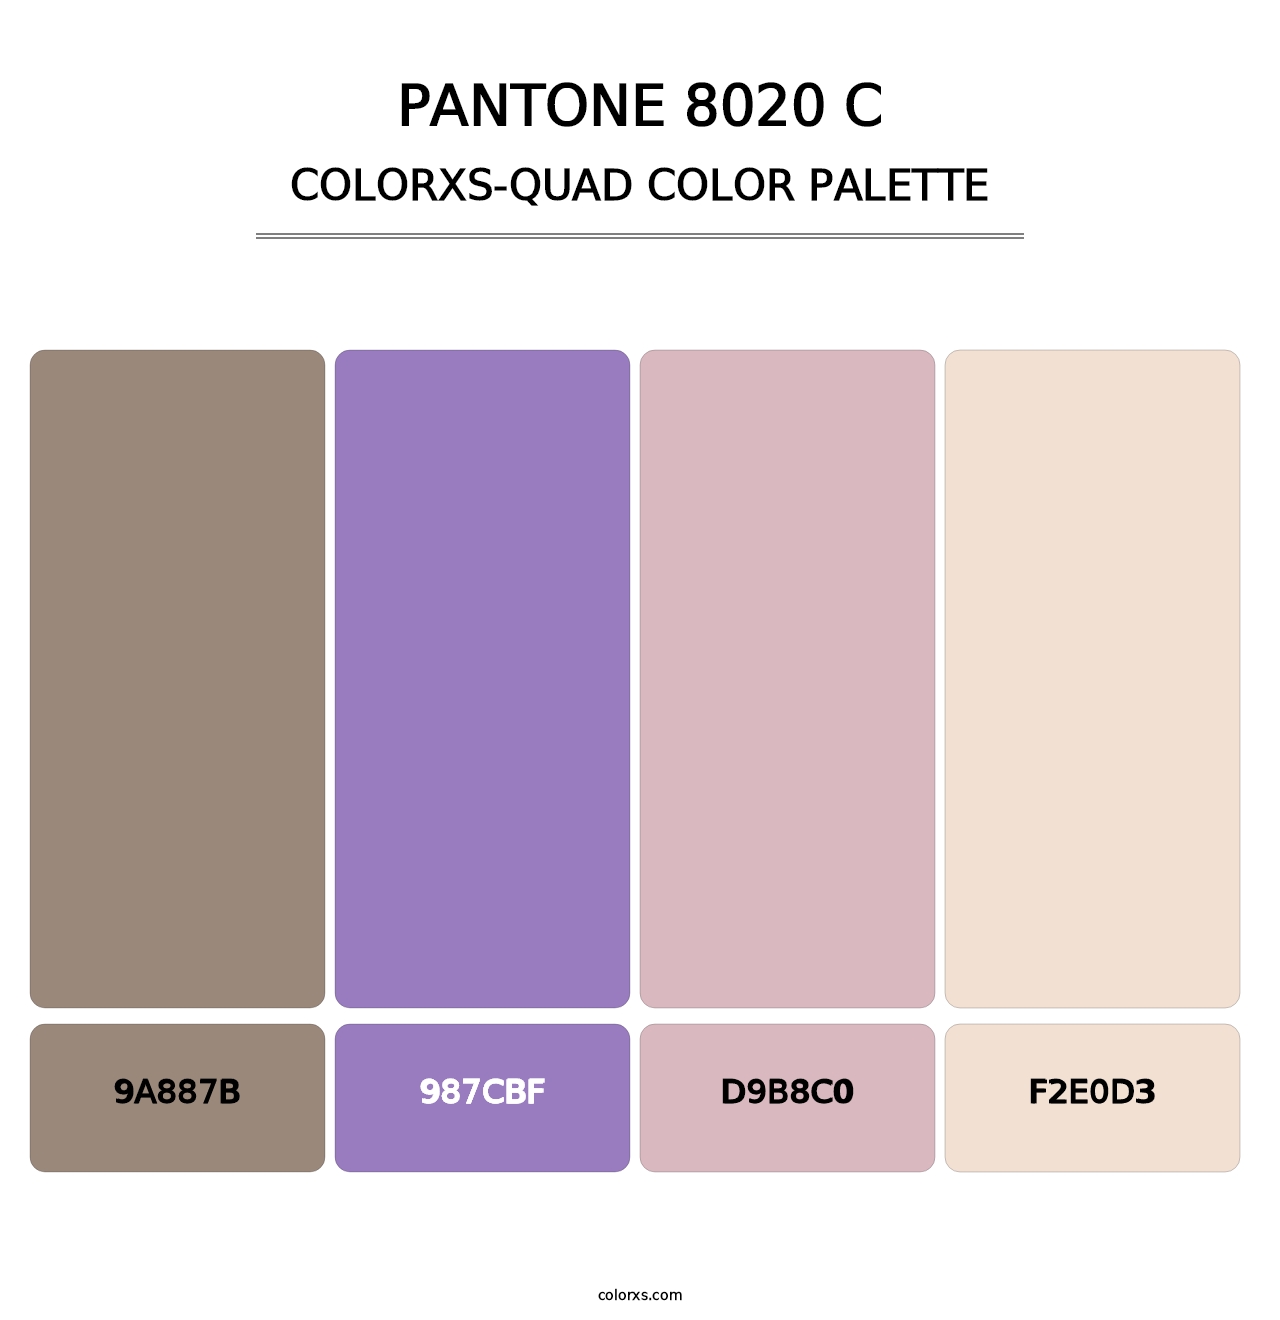 PANTONE 8020 C - Colorxs Quad Palette